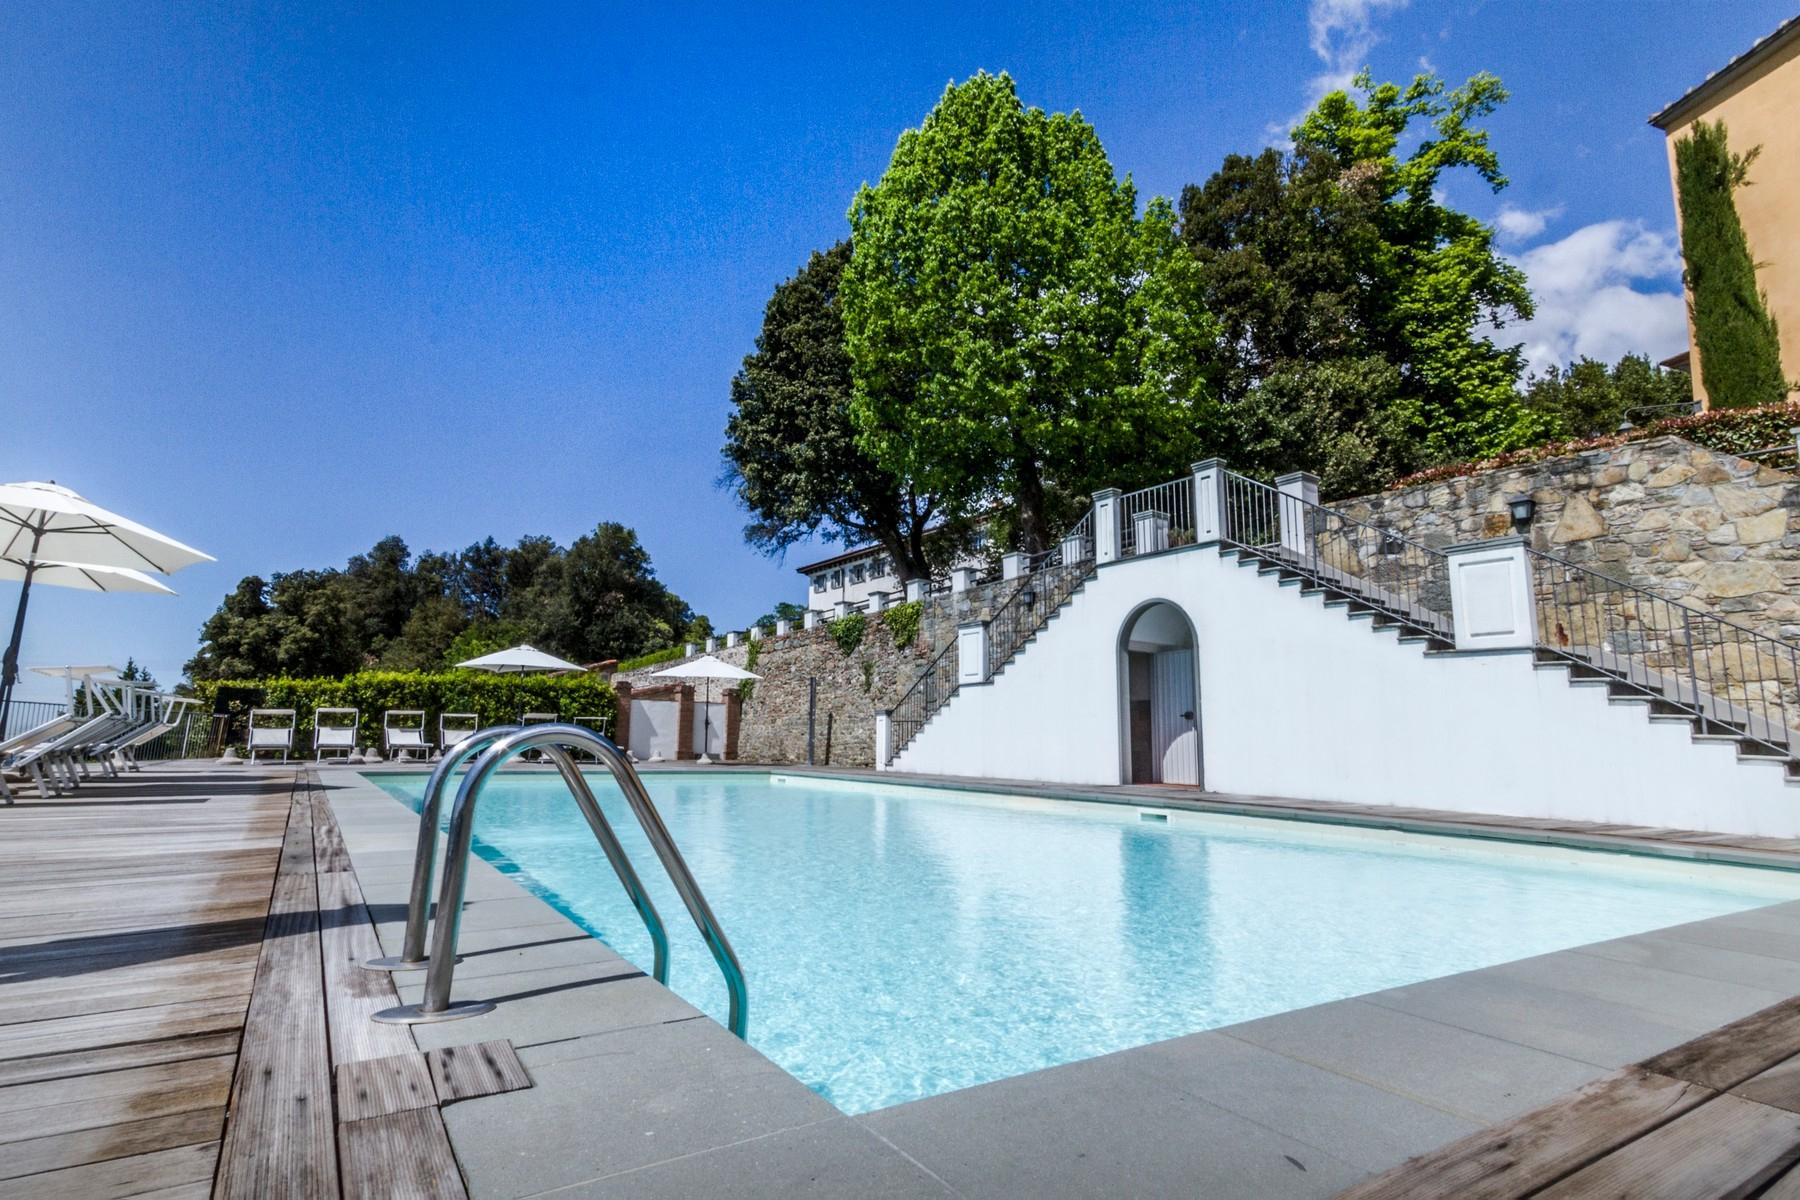 Appartamento di pregio in resort esclusivo con villa storica sulle colline di Lucca - 10